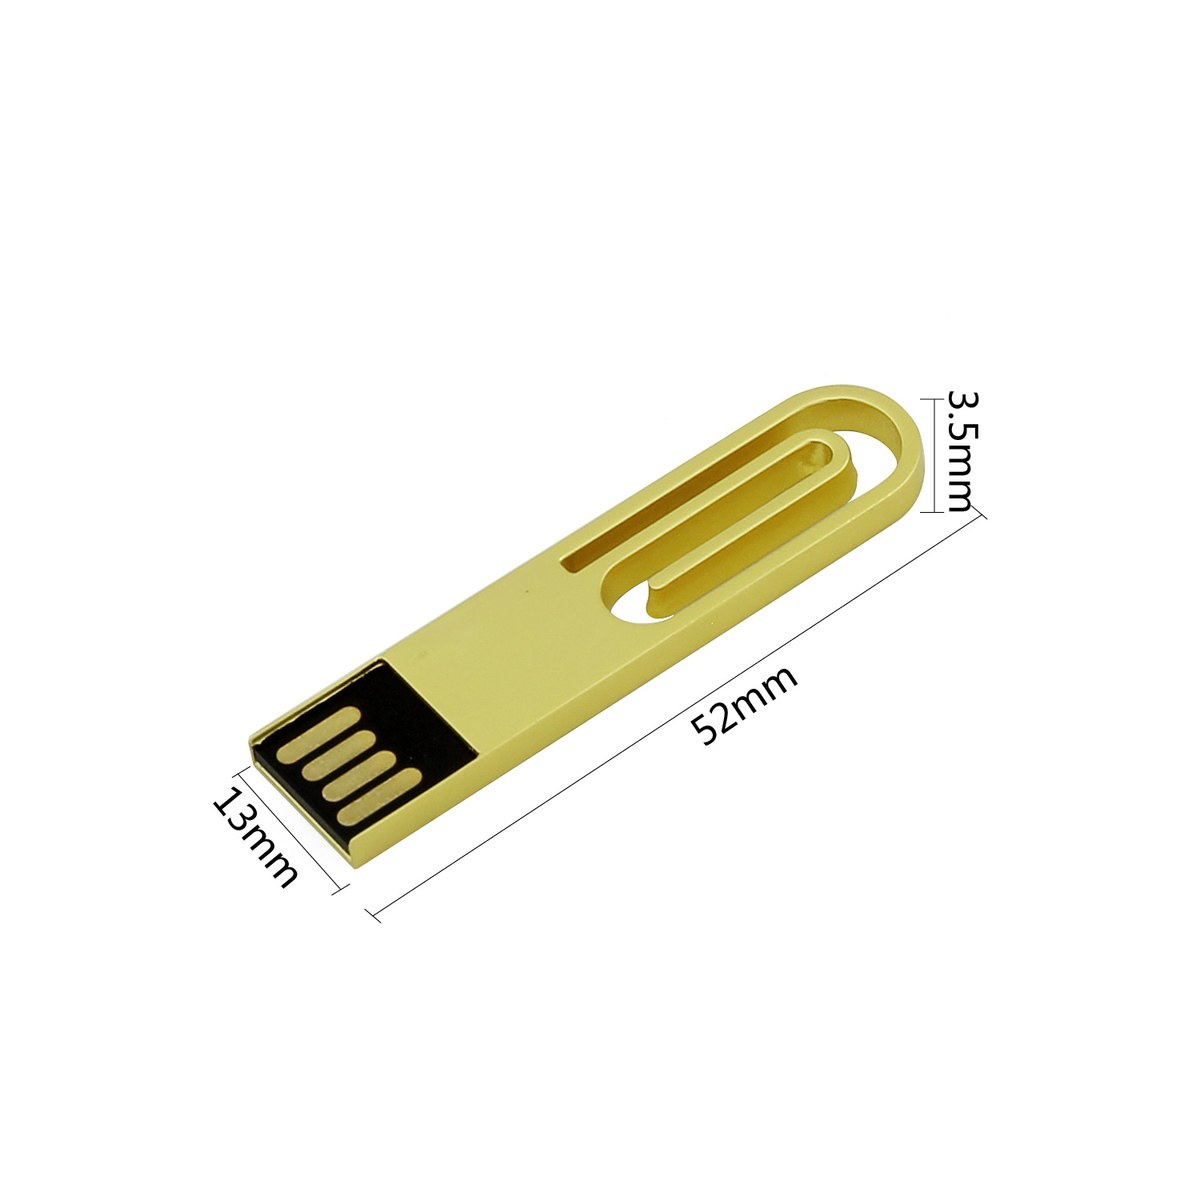 USB 2 (Blau, ® GB) GERMANY eCLIP USB-Stick